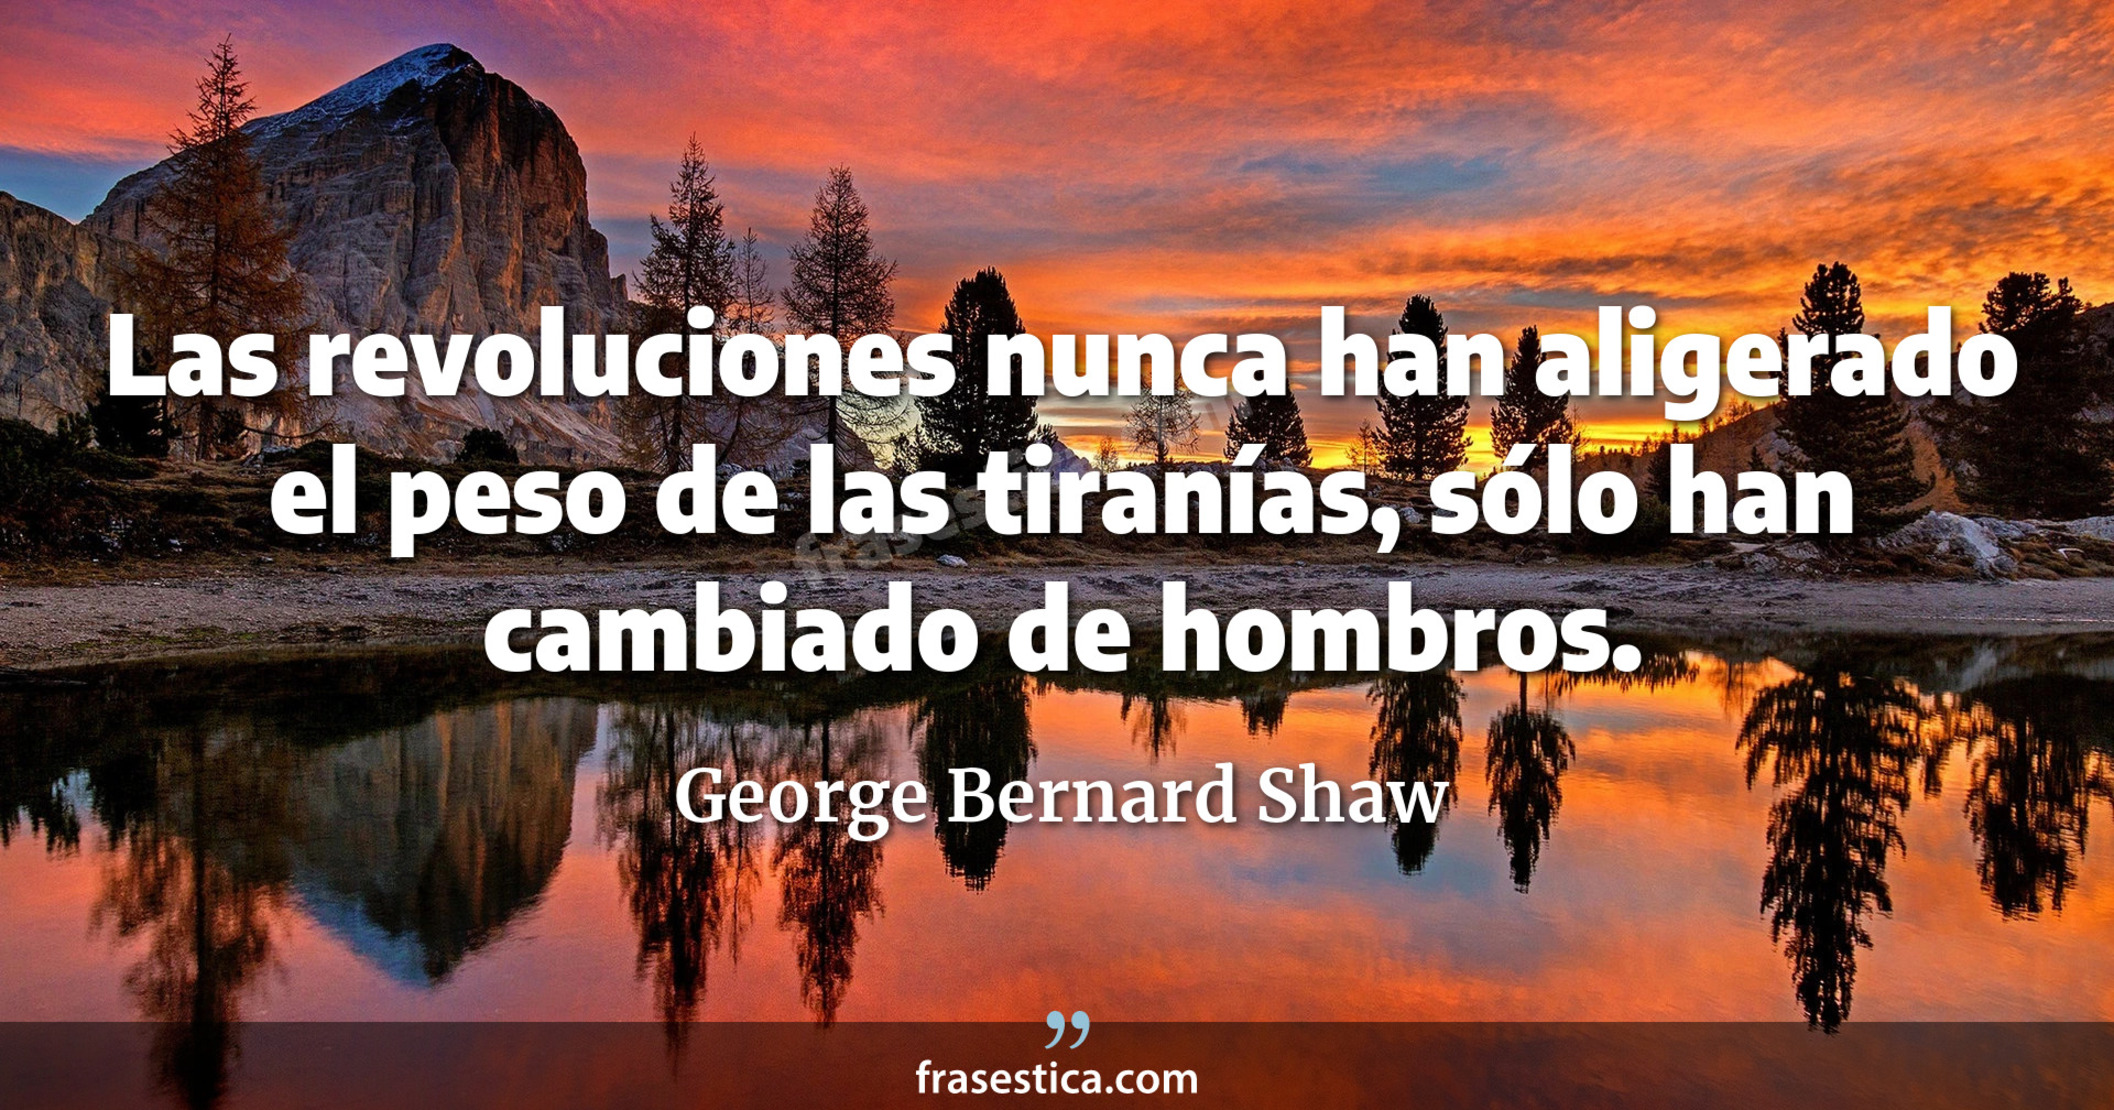 Las revoluciones nunca han aligerado el peso de las tiranías, sólo han cambiado de hombros. - George Bernard Shaw